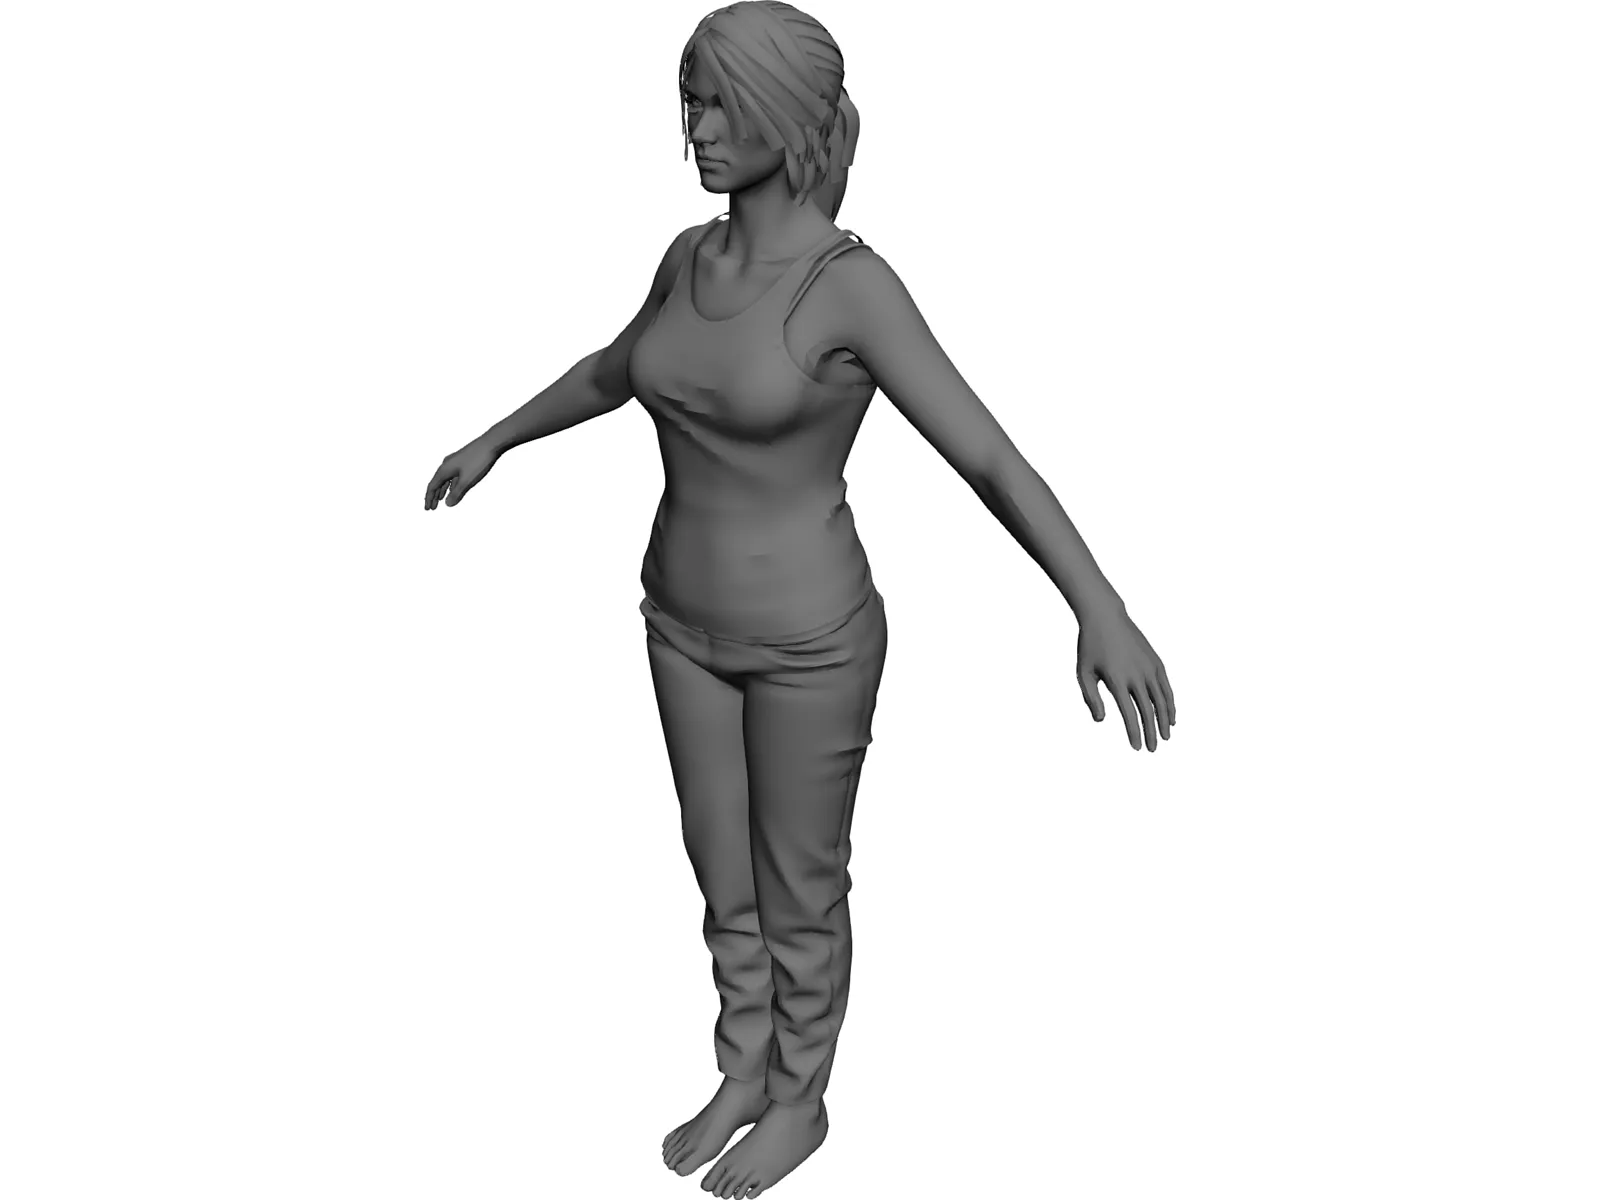 Underwear 3D Models Blender - .blend download - Free3D